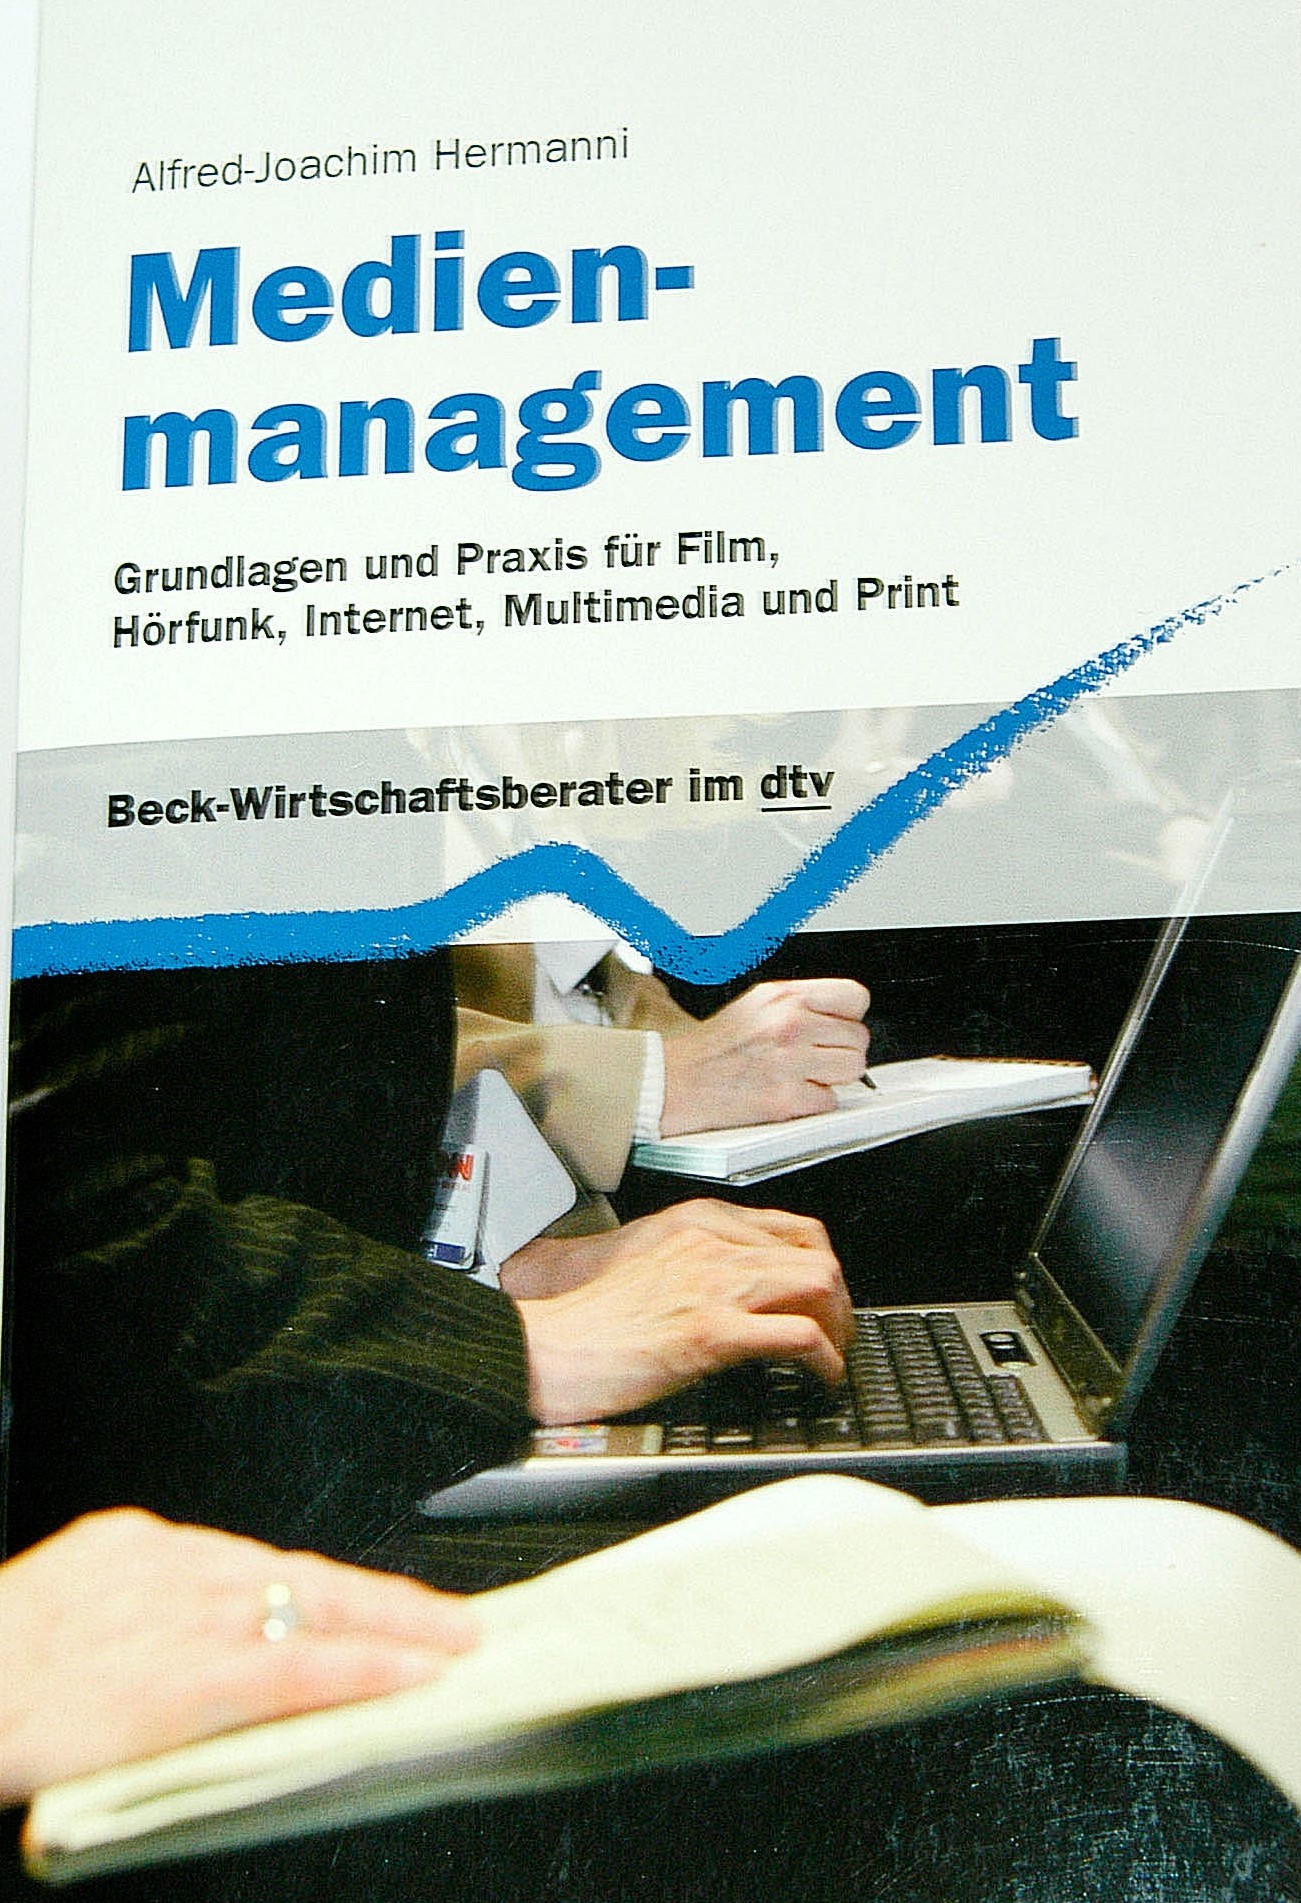 Buchtitel "Medienmanagement. Grundlagen und Praxis für Film, Hörfunk, Internet, Multimedia und Print" von Professor Dr. Alfred-Joachim Hermanni